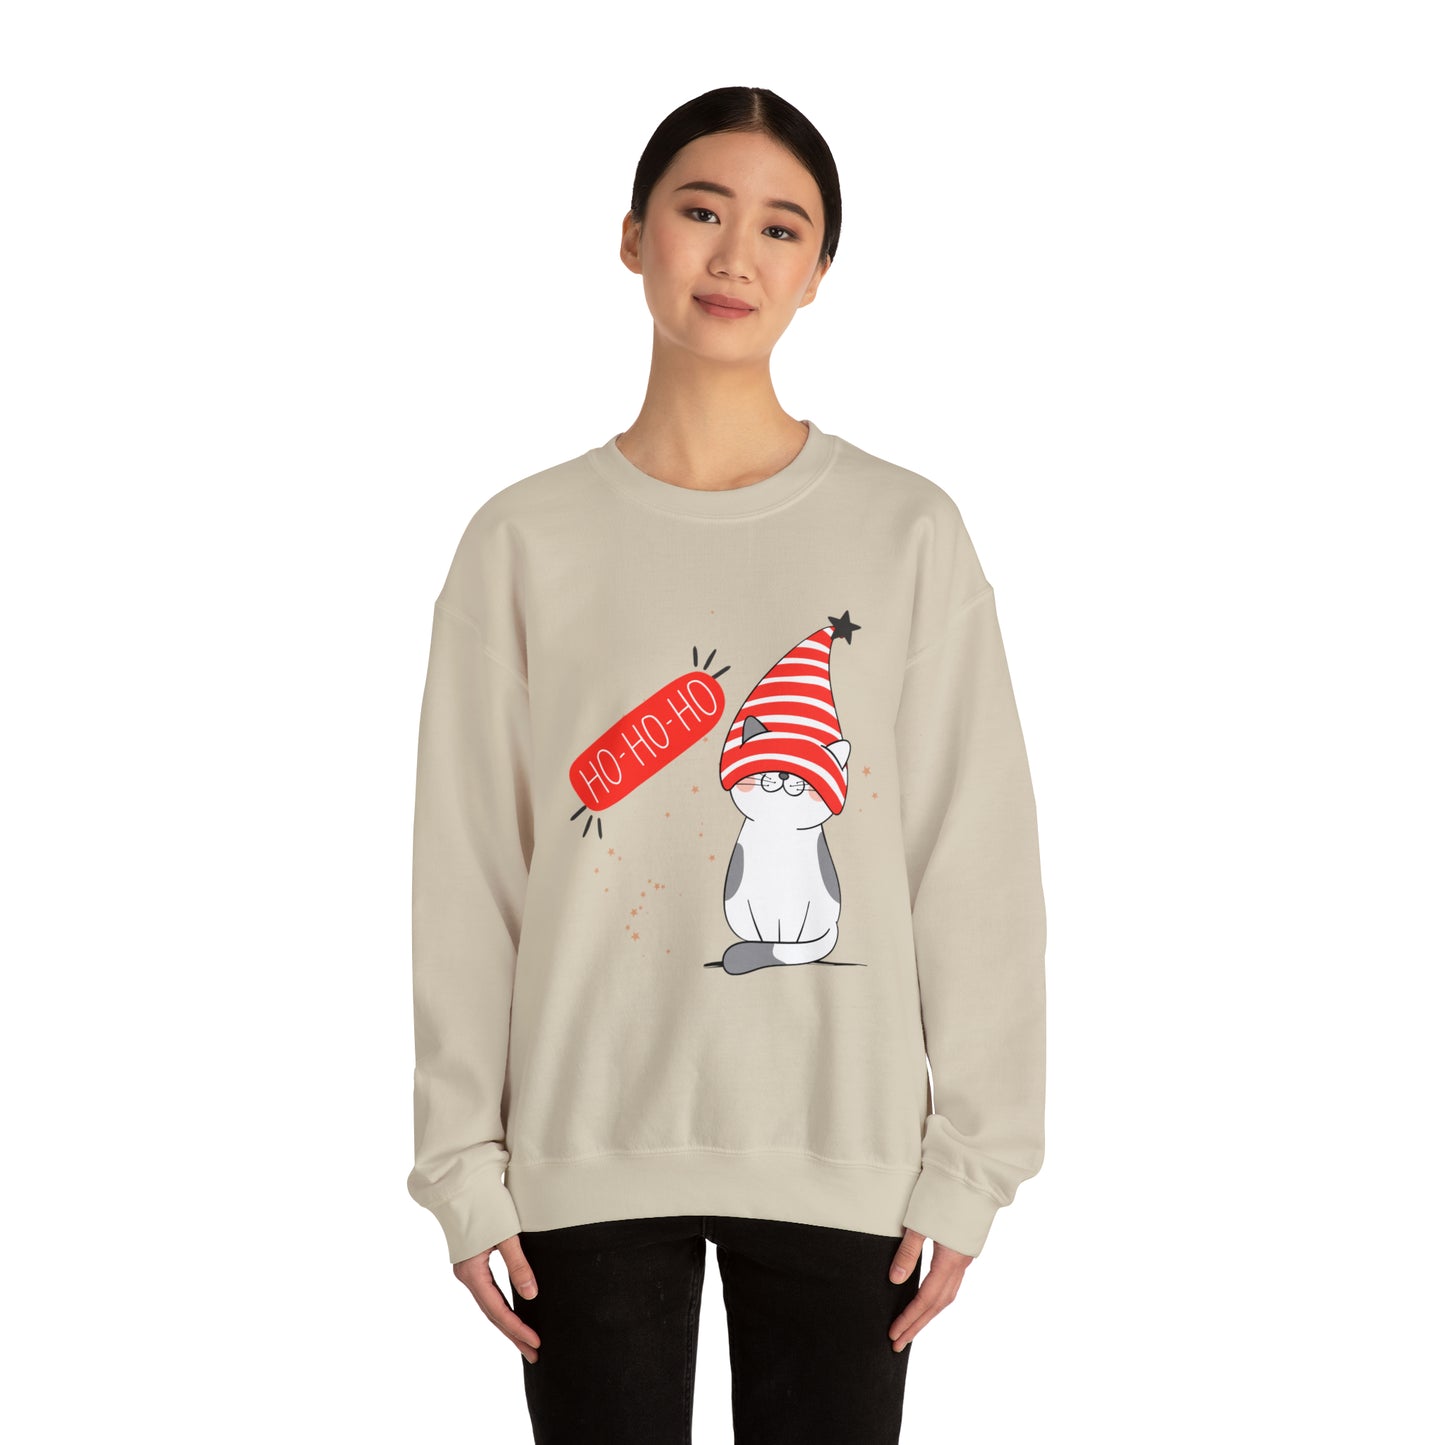 Ho Ho Ho Cat Merry Christmas Crewneck Sweatshirt